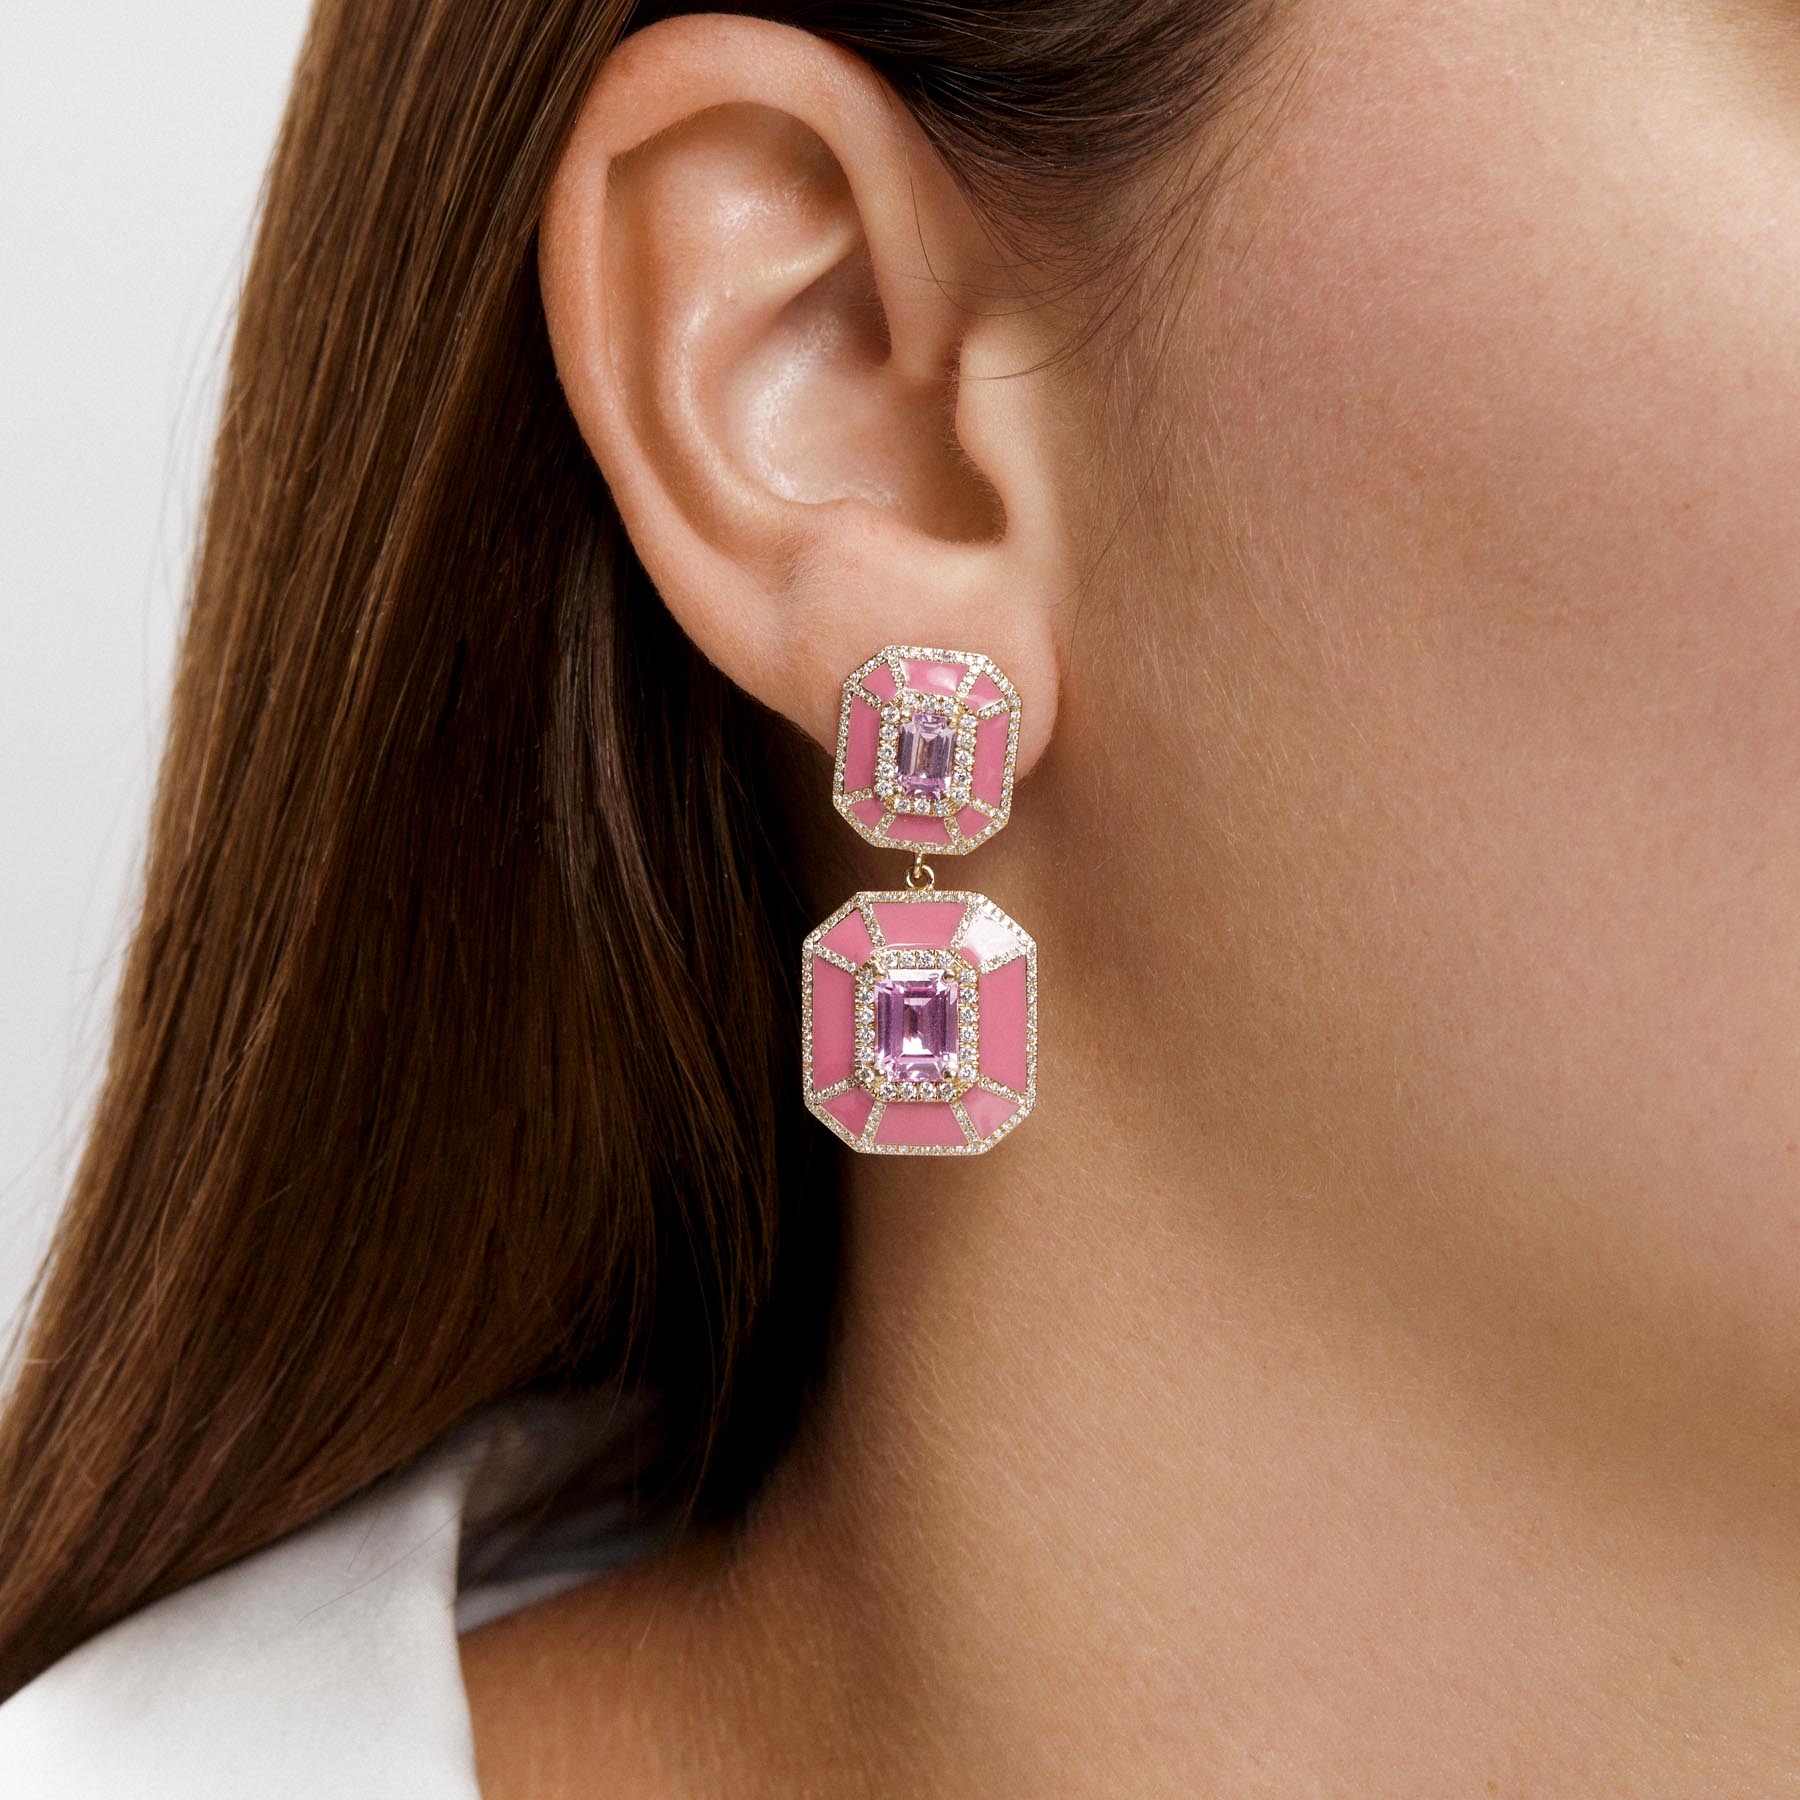 14KT Yellow Gold Pink Topaz Pink Enamel Diamond Deco Earrings